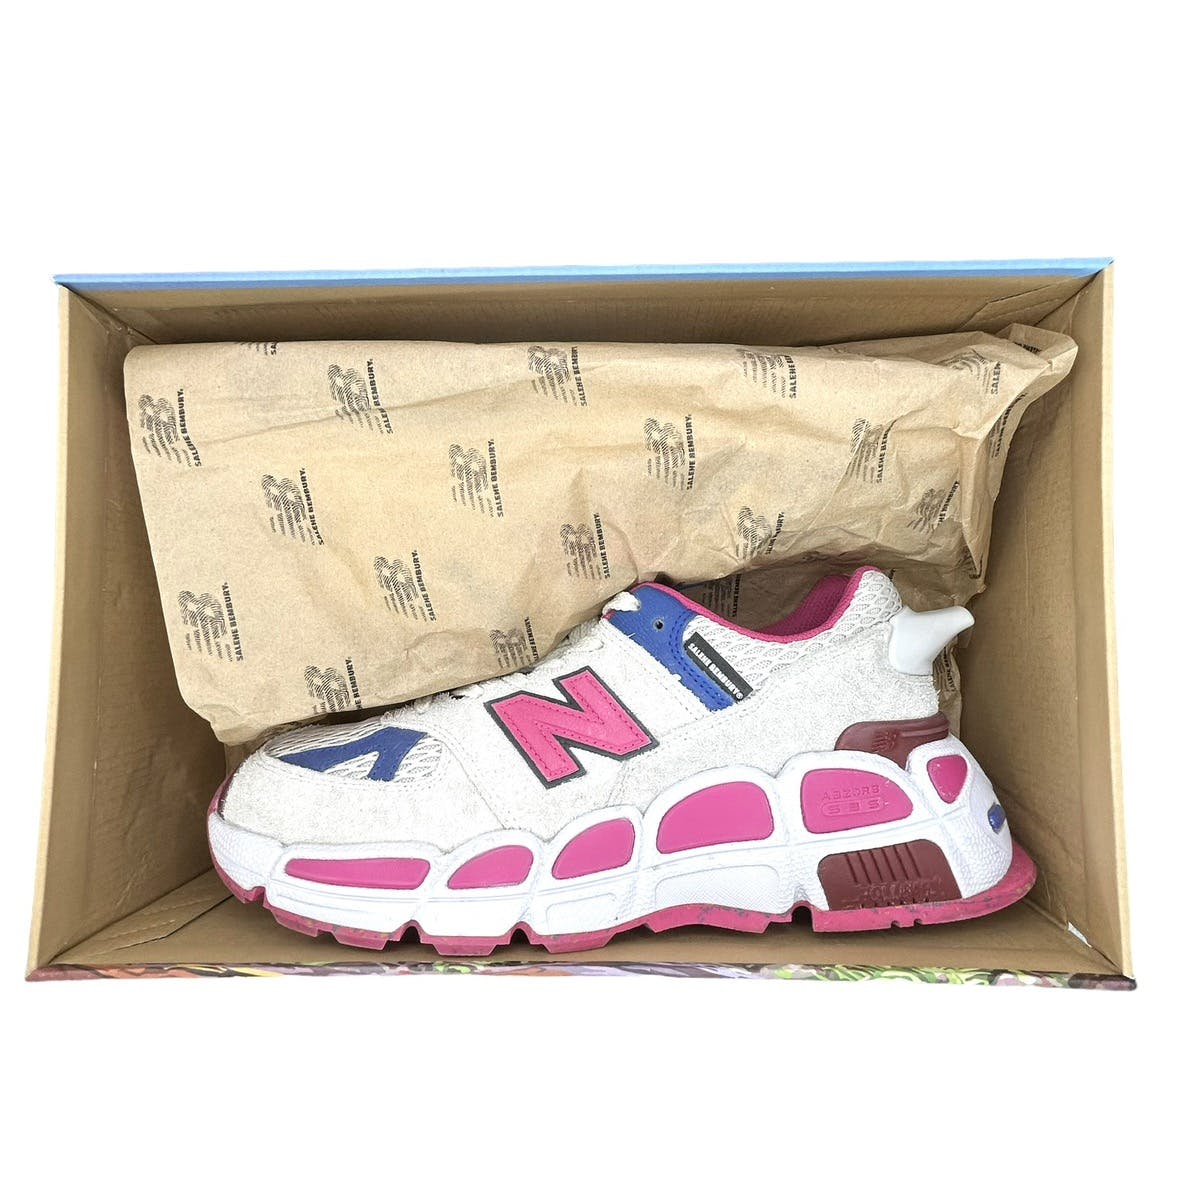 NB 574 “Yurt” Chunky Sneakers - 16